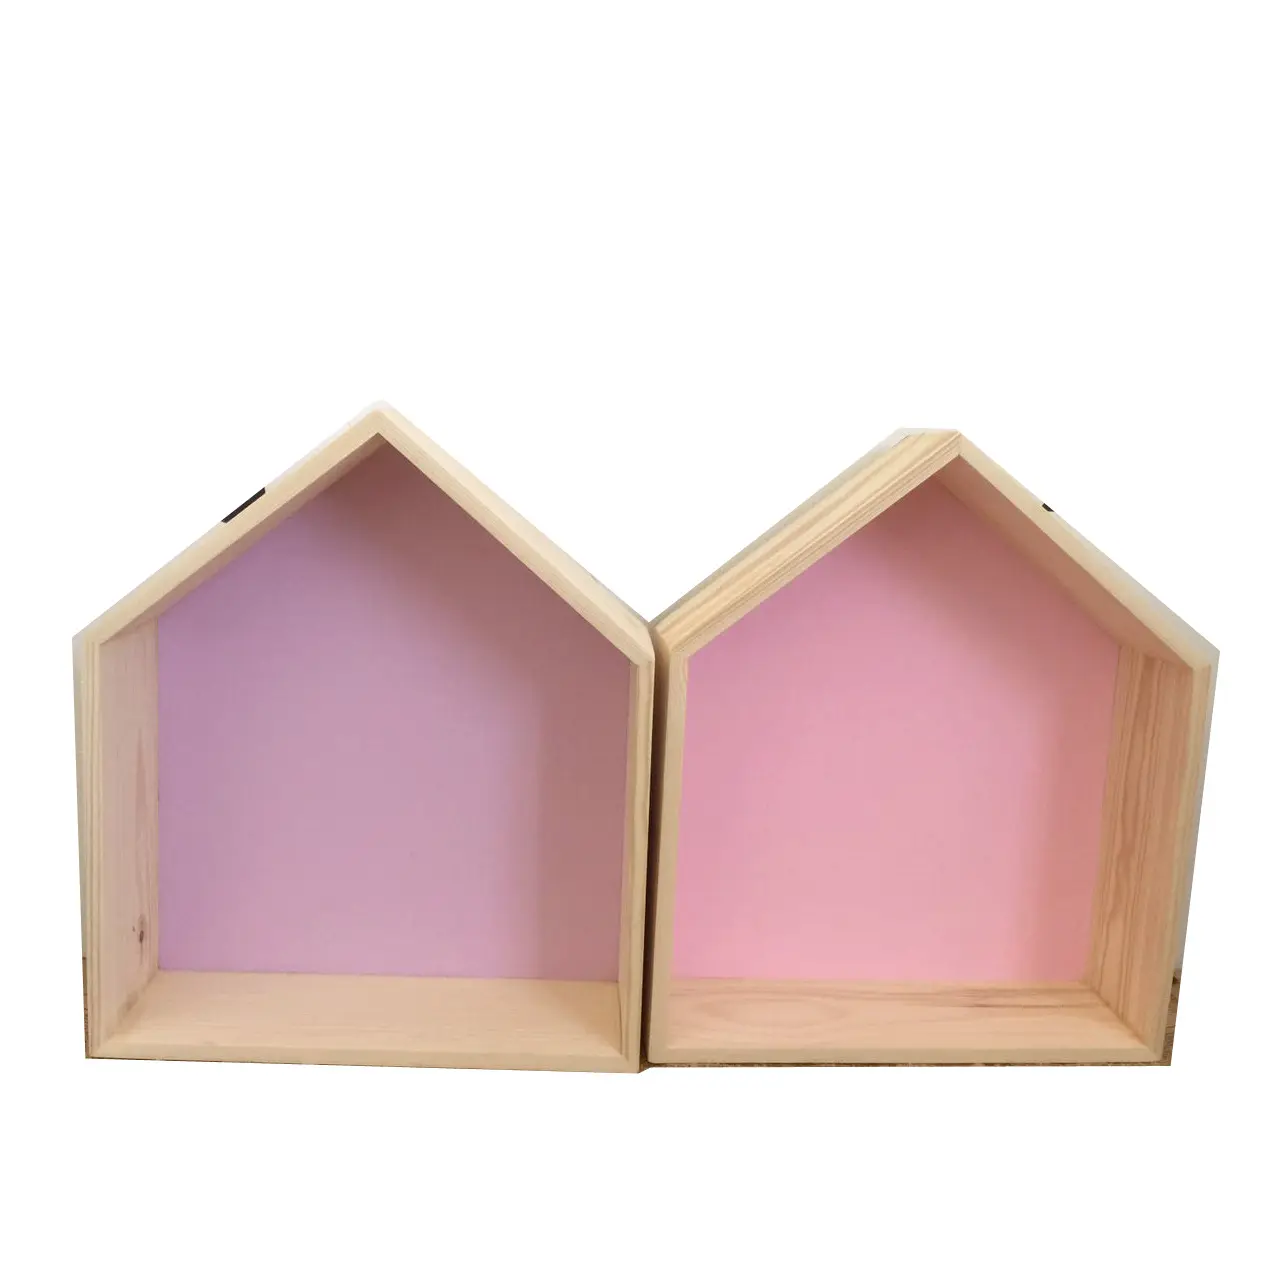 Venta al por mayor casa de madera forma pentagonal estante para la decoración de la habitación de los niños